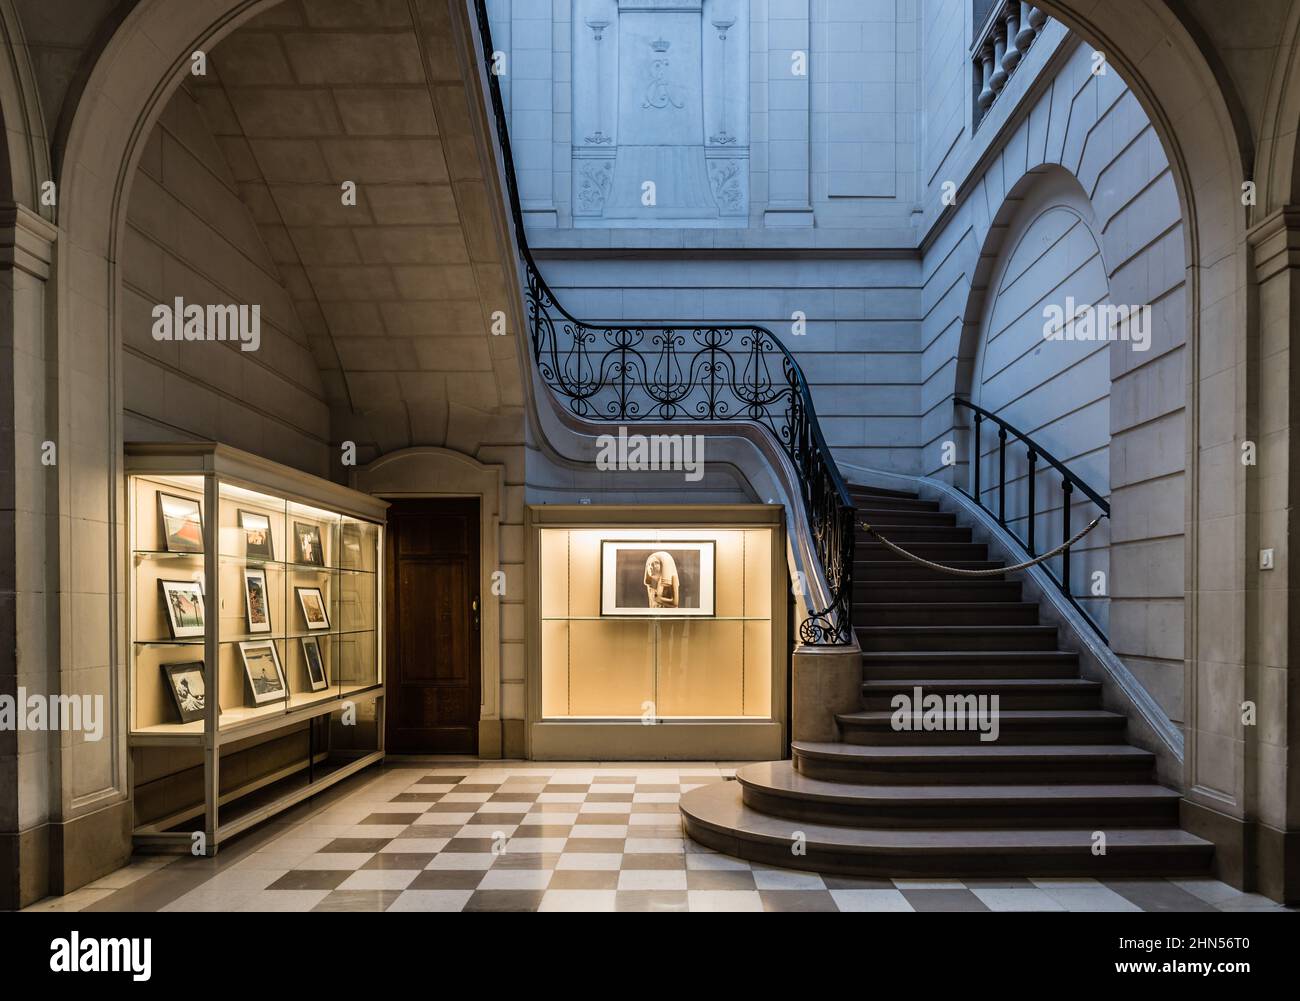 Bruxelles, Belgique - 11 11 2018: Vue intérieure d'un escalier le hall d'entrée du musée royal d'Art et d'Histoire Banque D'Images